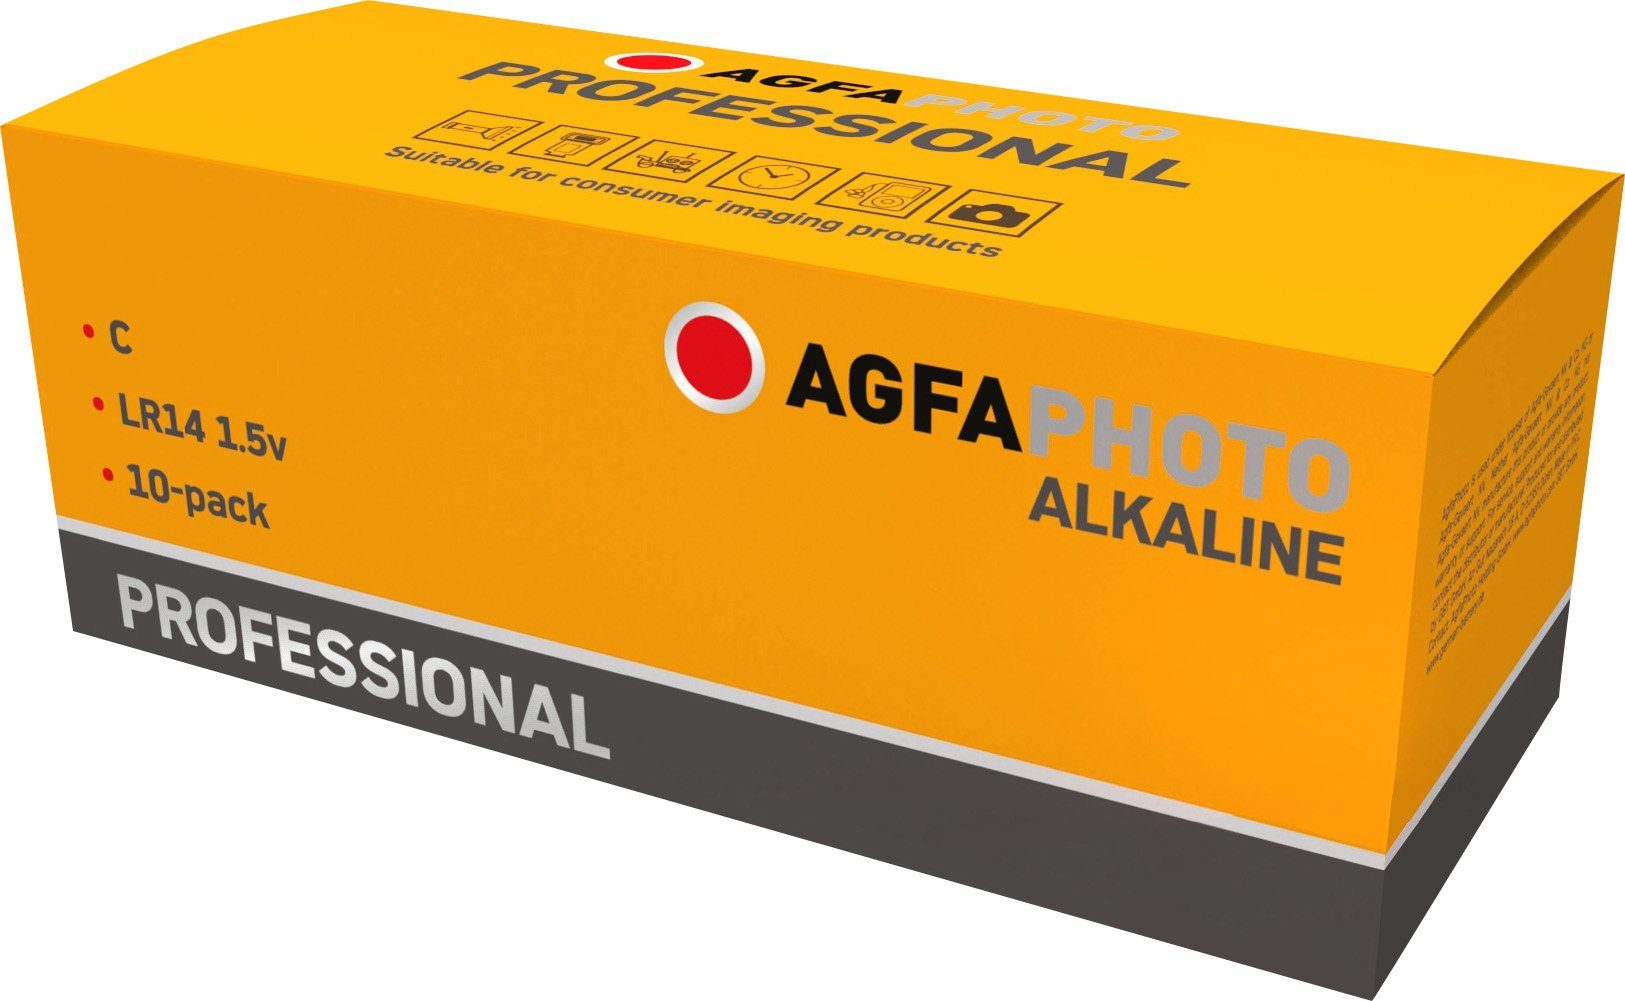 AgfaPhoto Agfaphoto Batterie Alkaline, Baby, C, LR14, 1.5V Professional, Retail Batterie